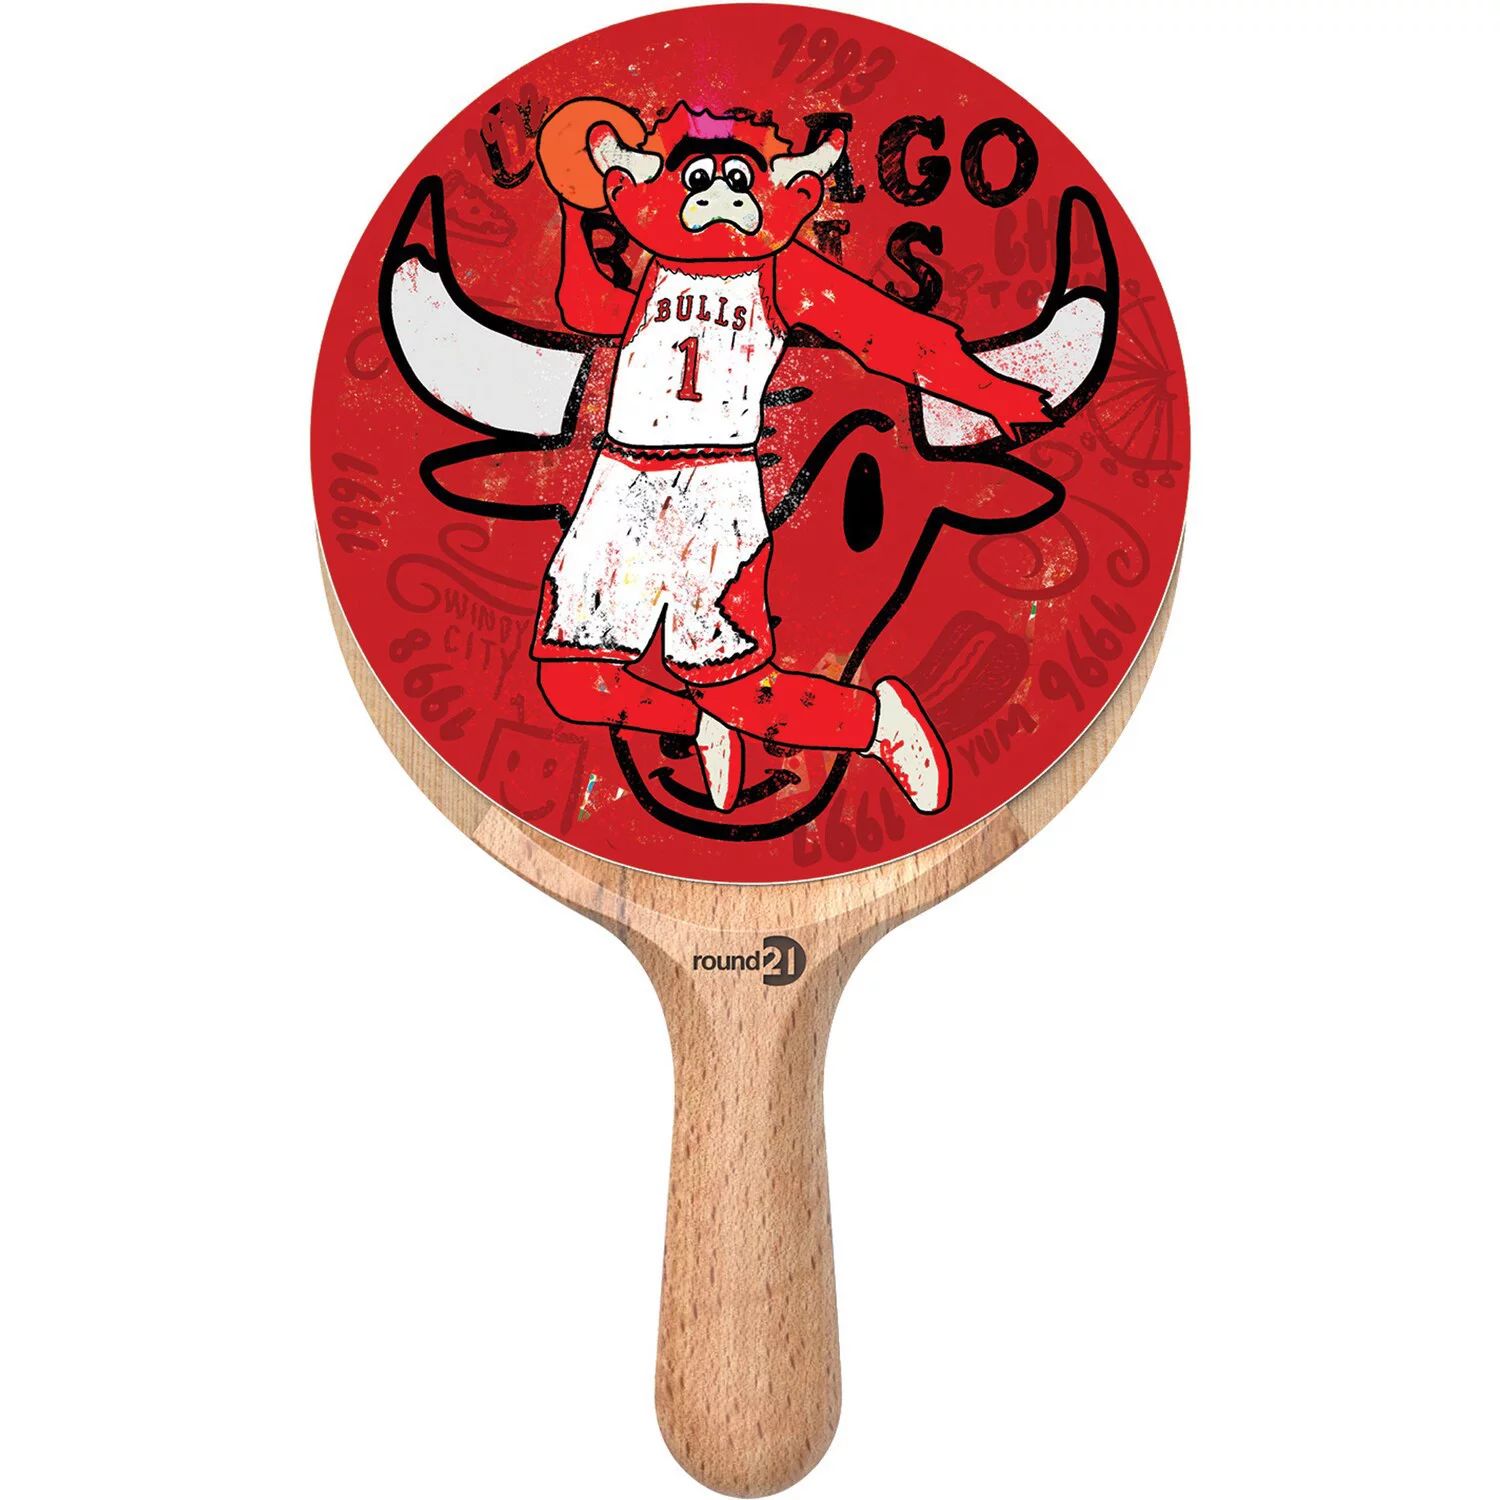 Ракетка для настольного тенниса Chicago Bulls Unbranded ракетка для настольного тенниса e20 теннисная ракетка с 7 слоями с длинной короткой ручкой ракетка для пинг понга ракетка для тенниса